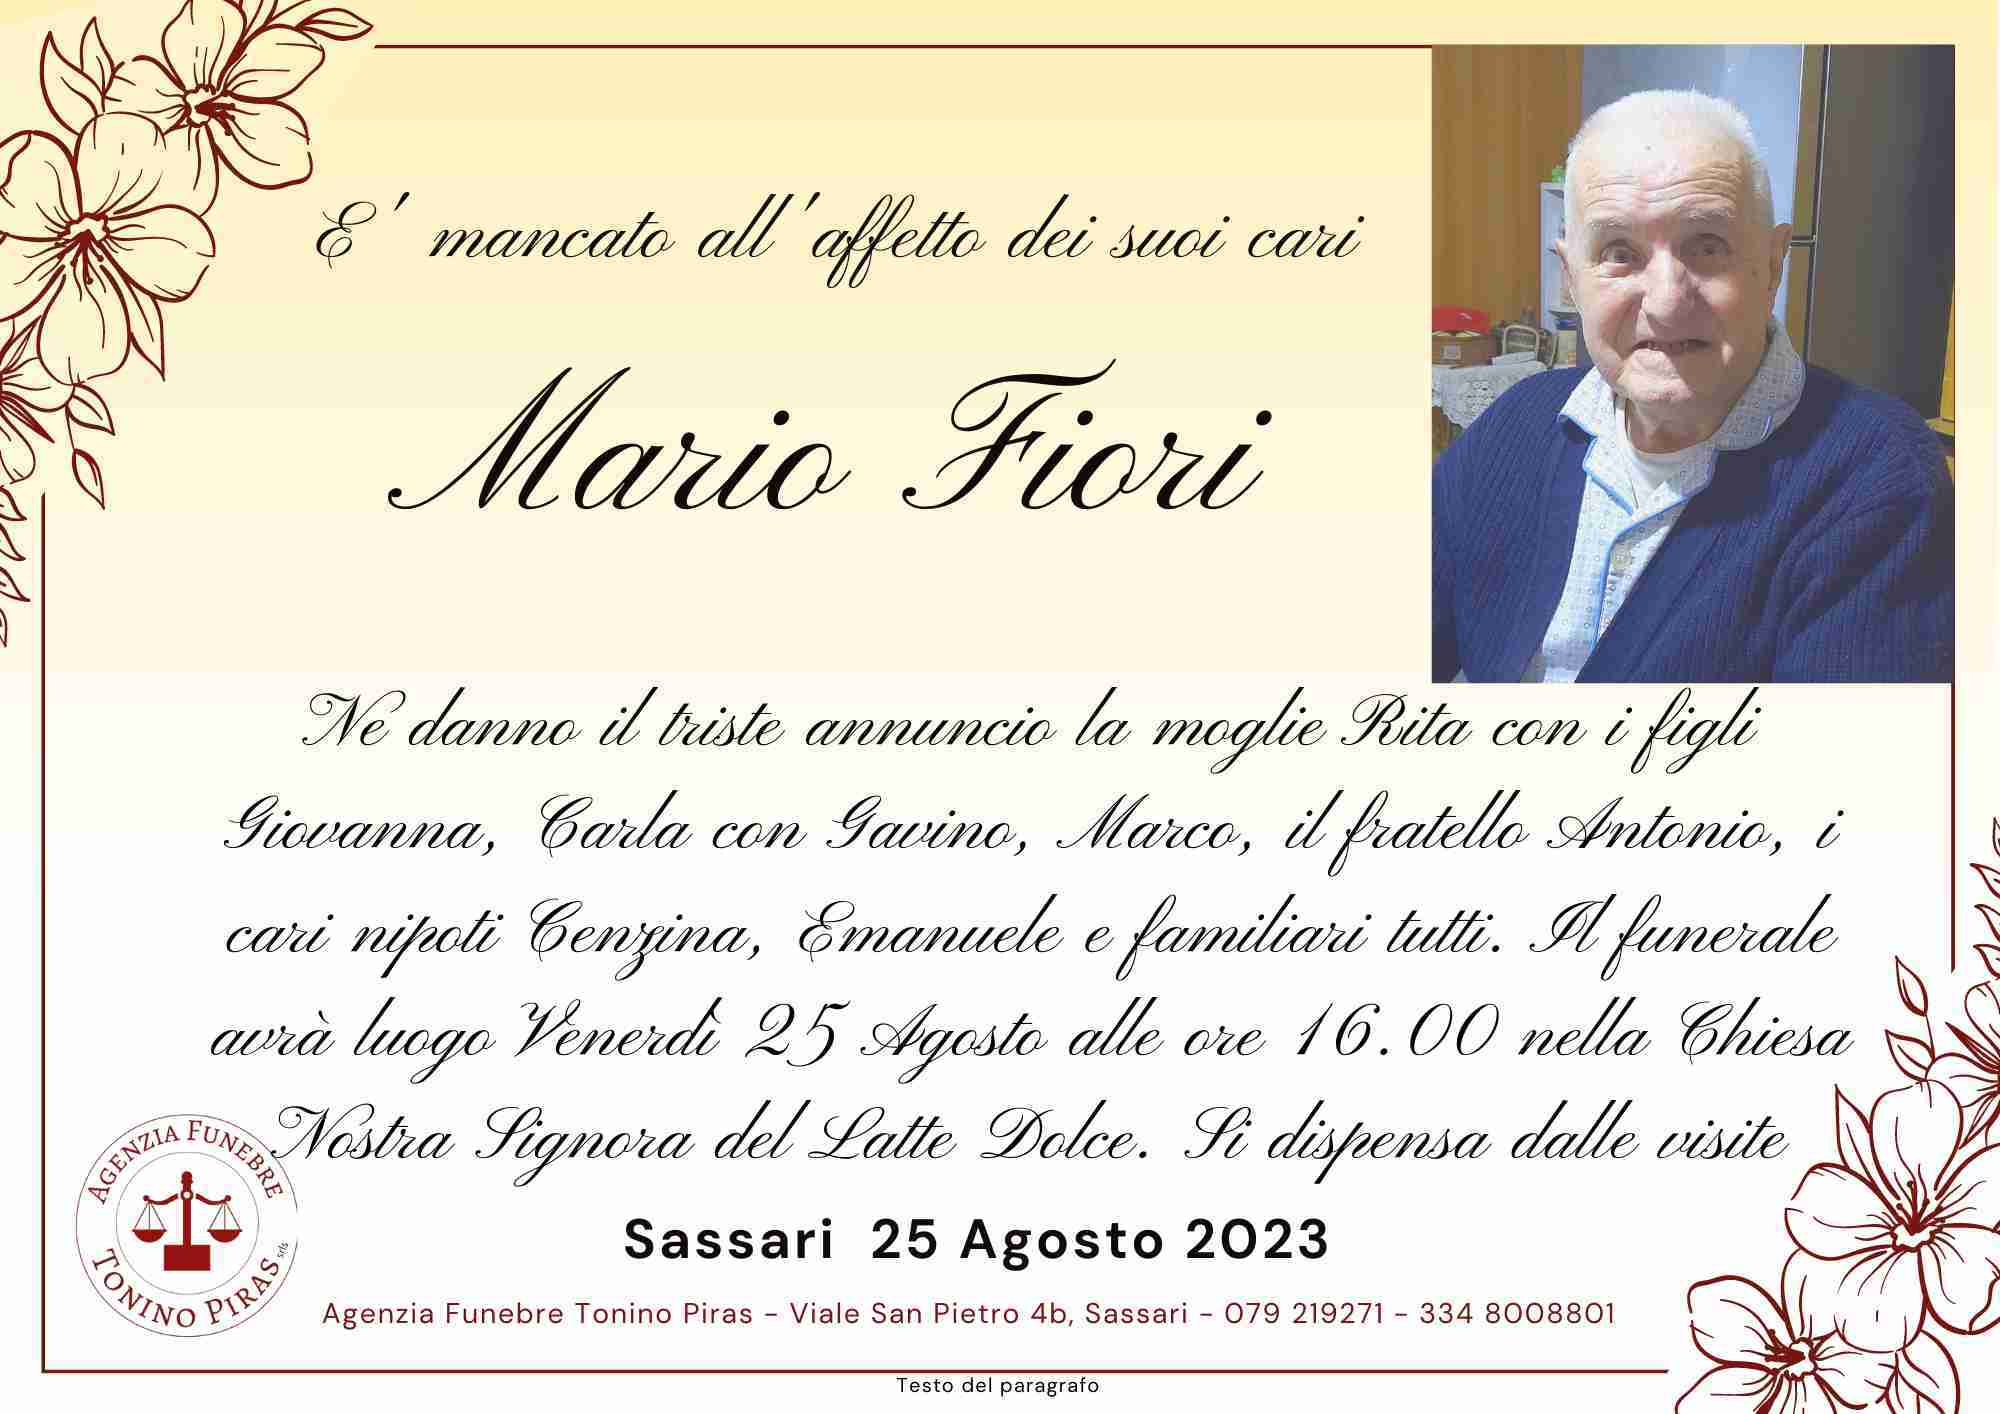 Mario Fiori